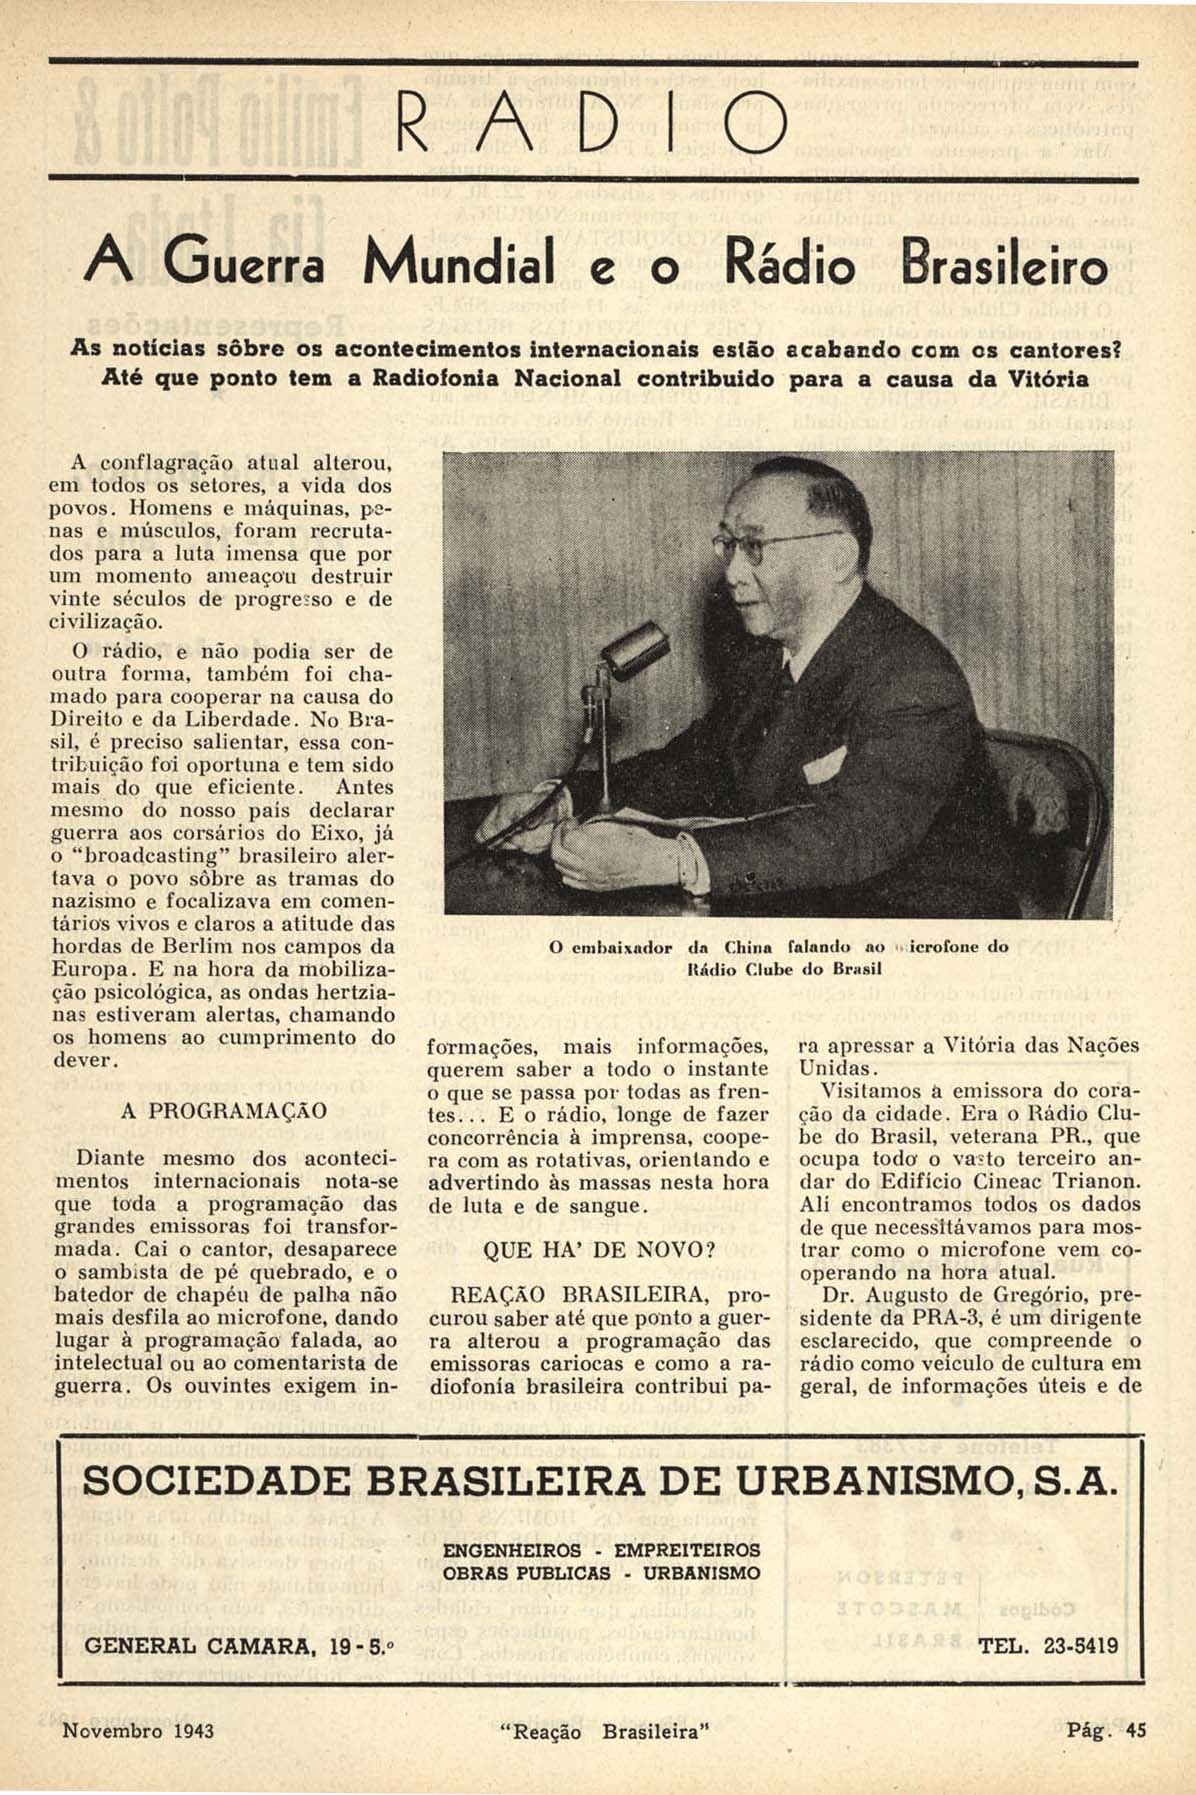 A GUERRA mundial e o rádio brasileiro. Reação Brasileira, Rio de Janeiro, n. 47, p. 45-46,  nov. 1943.